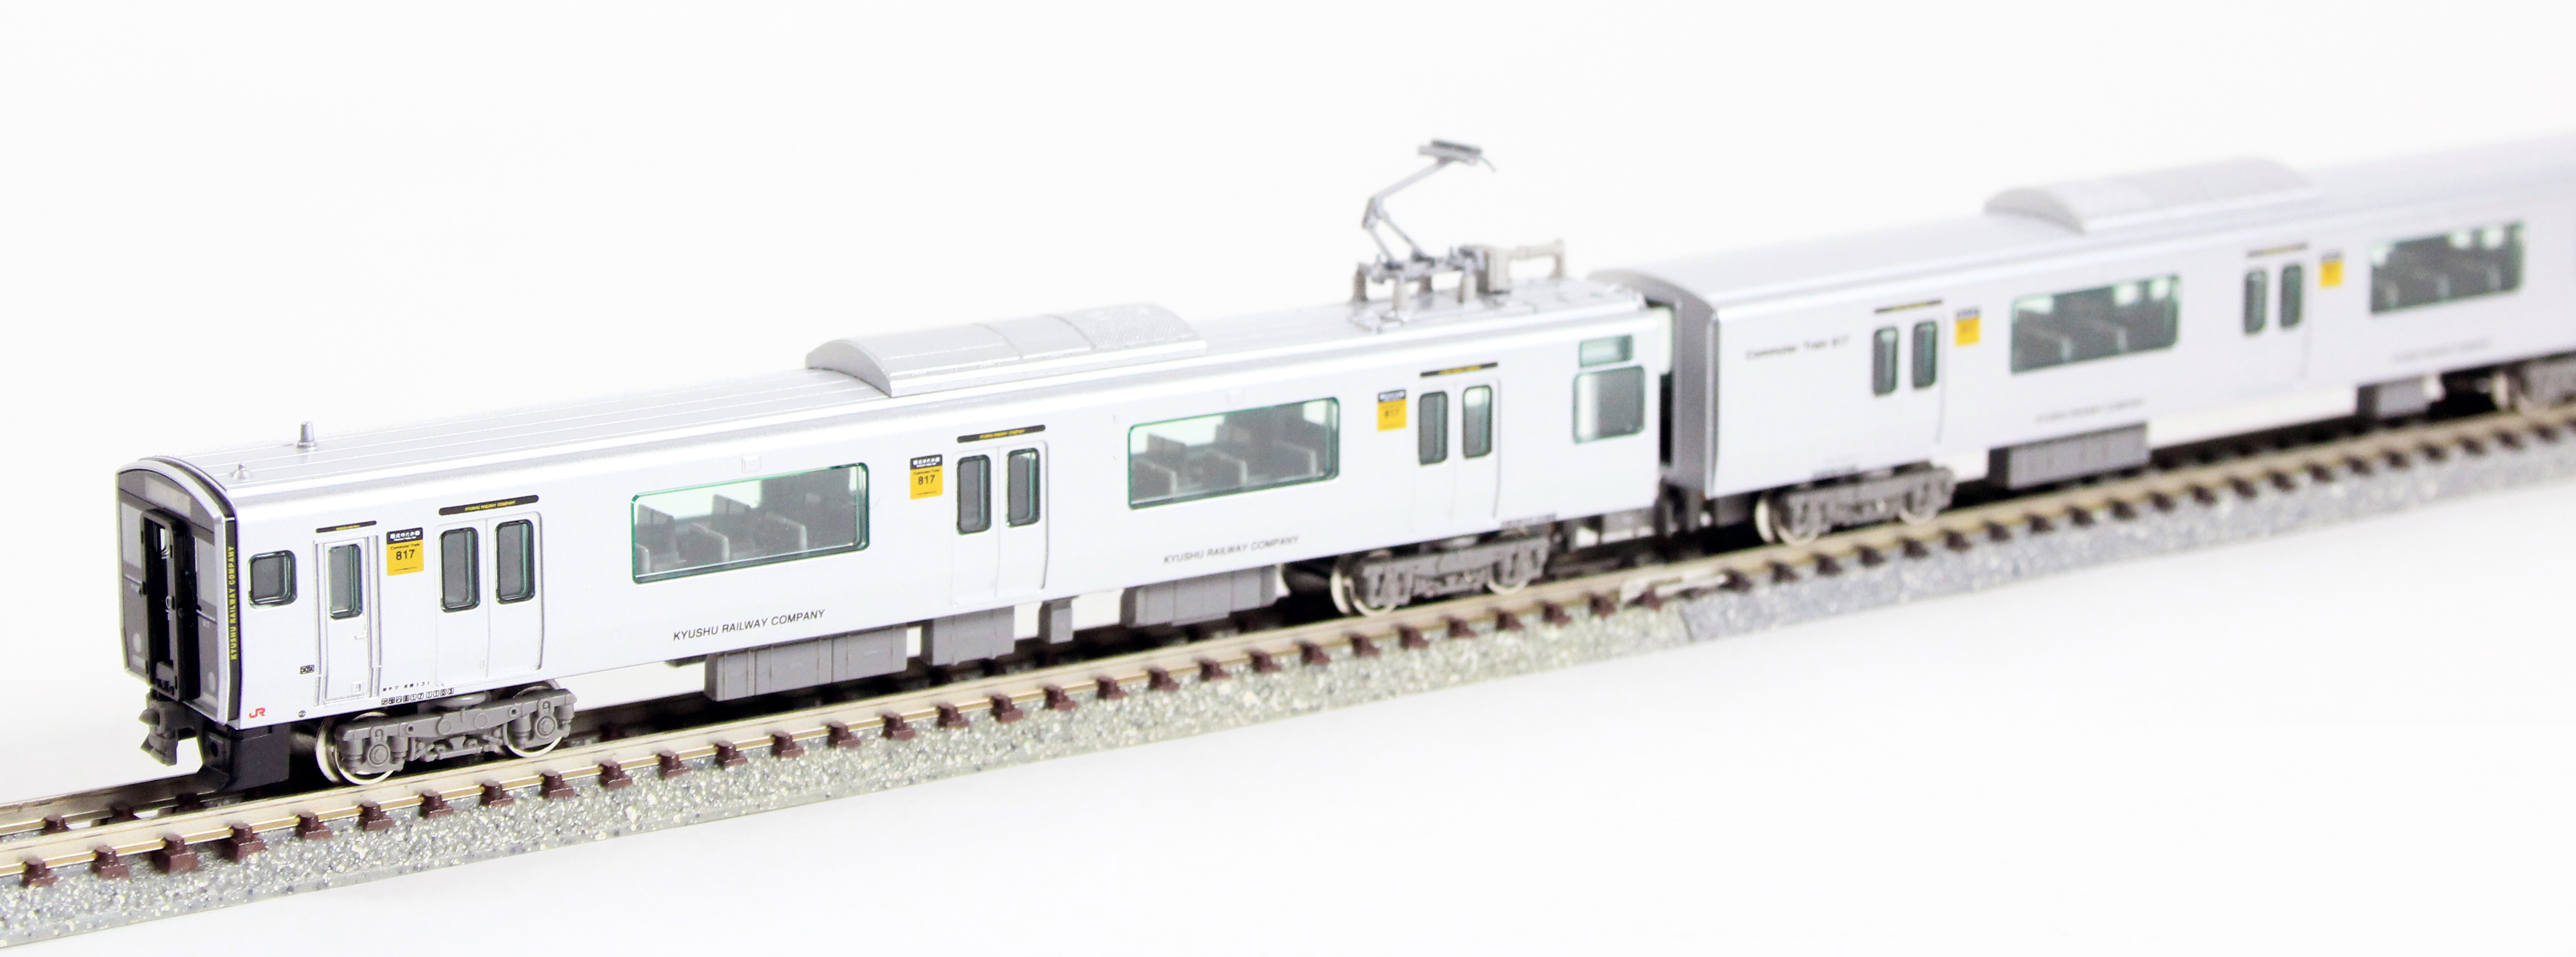 グリーンマックス 30667 JR九州817系1100番台 増結2両セット鉄道模型 N